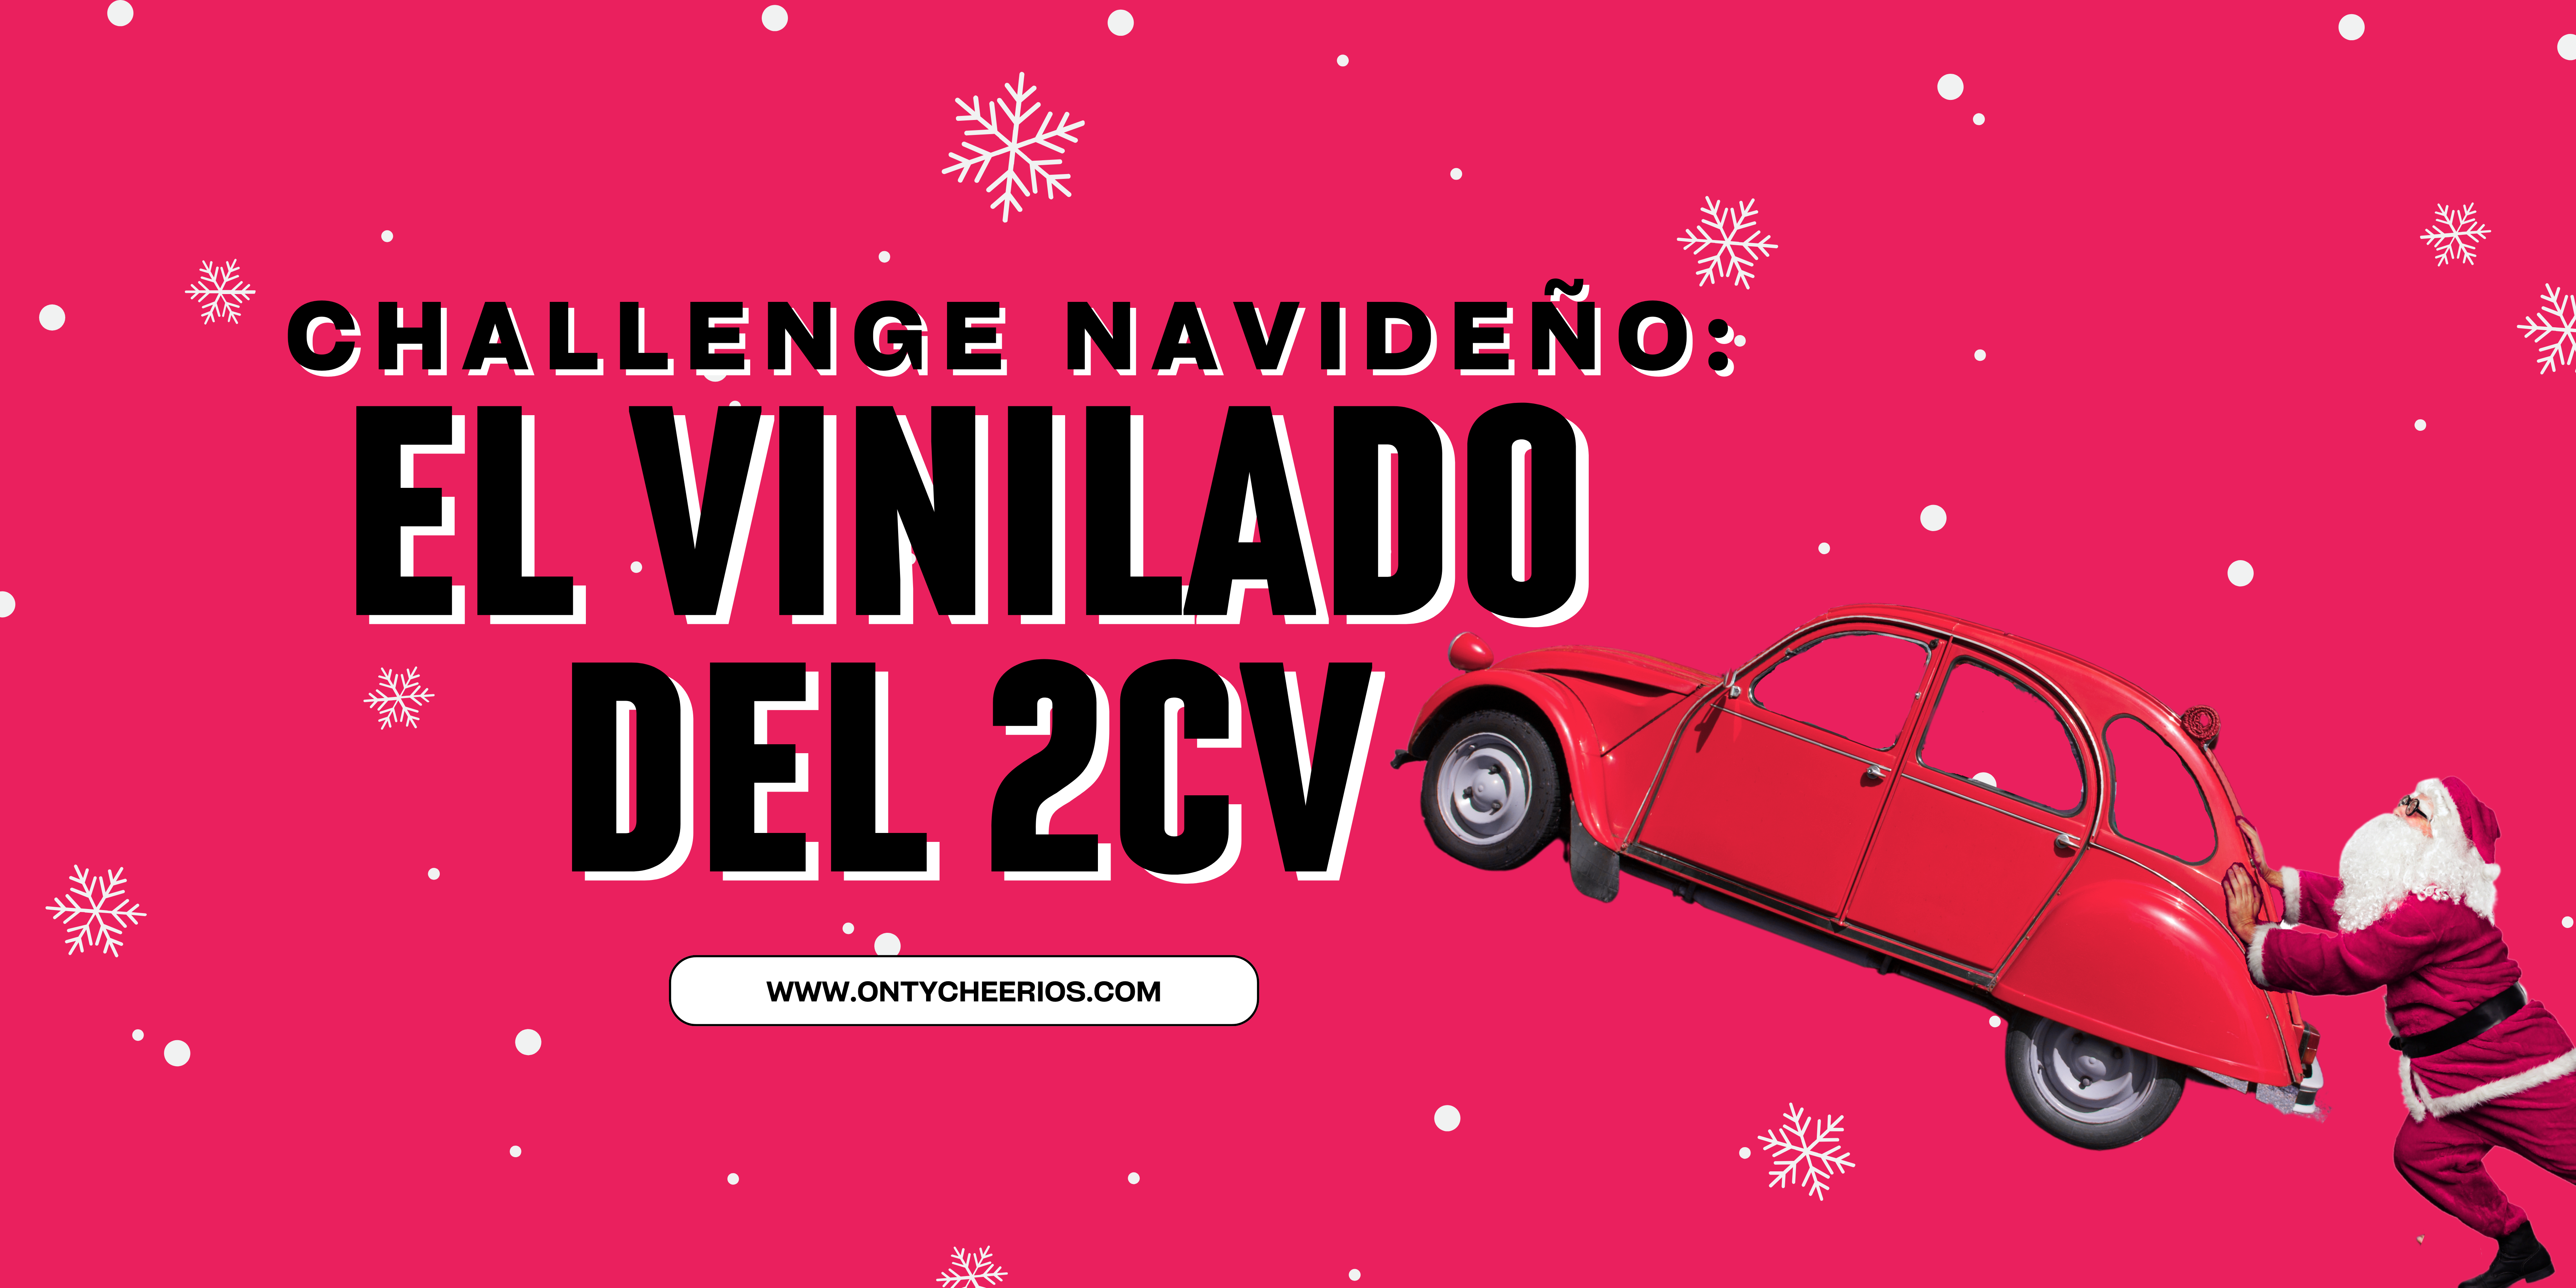 Challenge Navideño: El Vinilado del 2CV - Ontycheerios